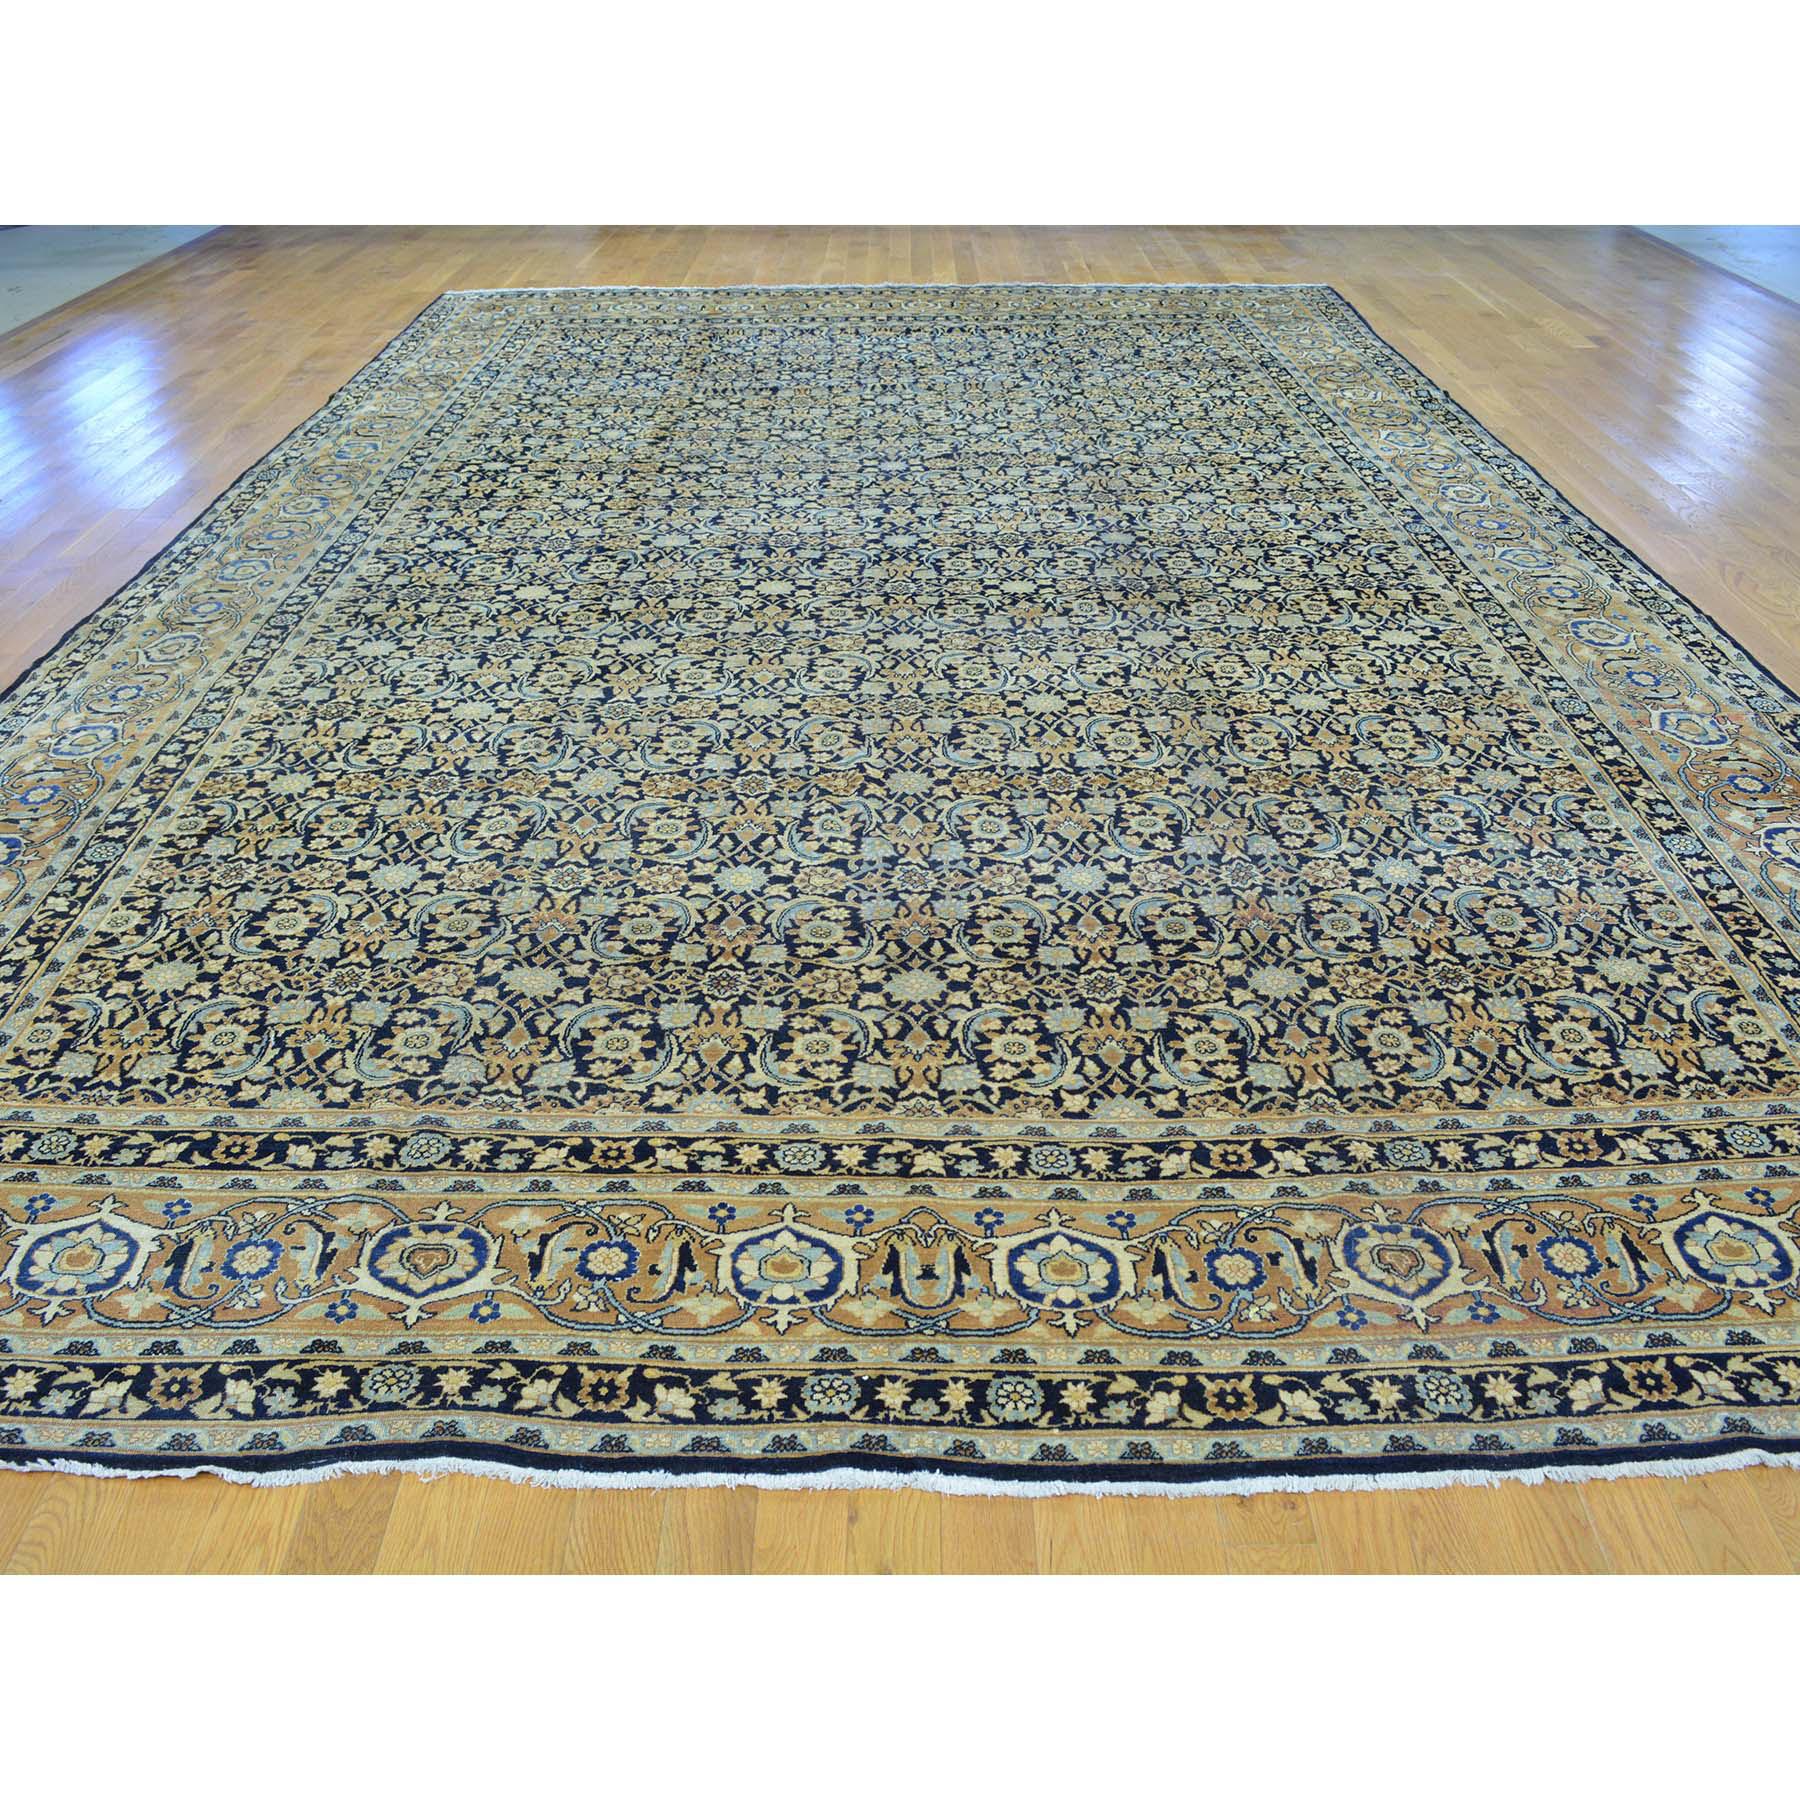 Gallery size antique Persian Kerman Herati design rug. Measures: 10'10